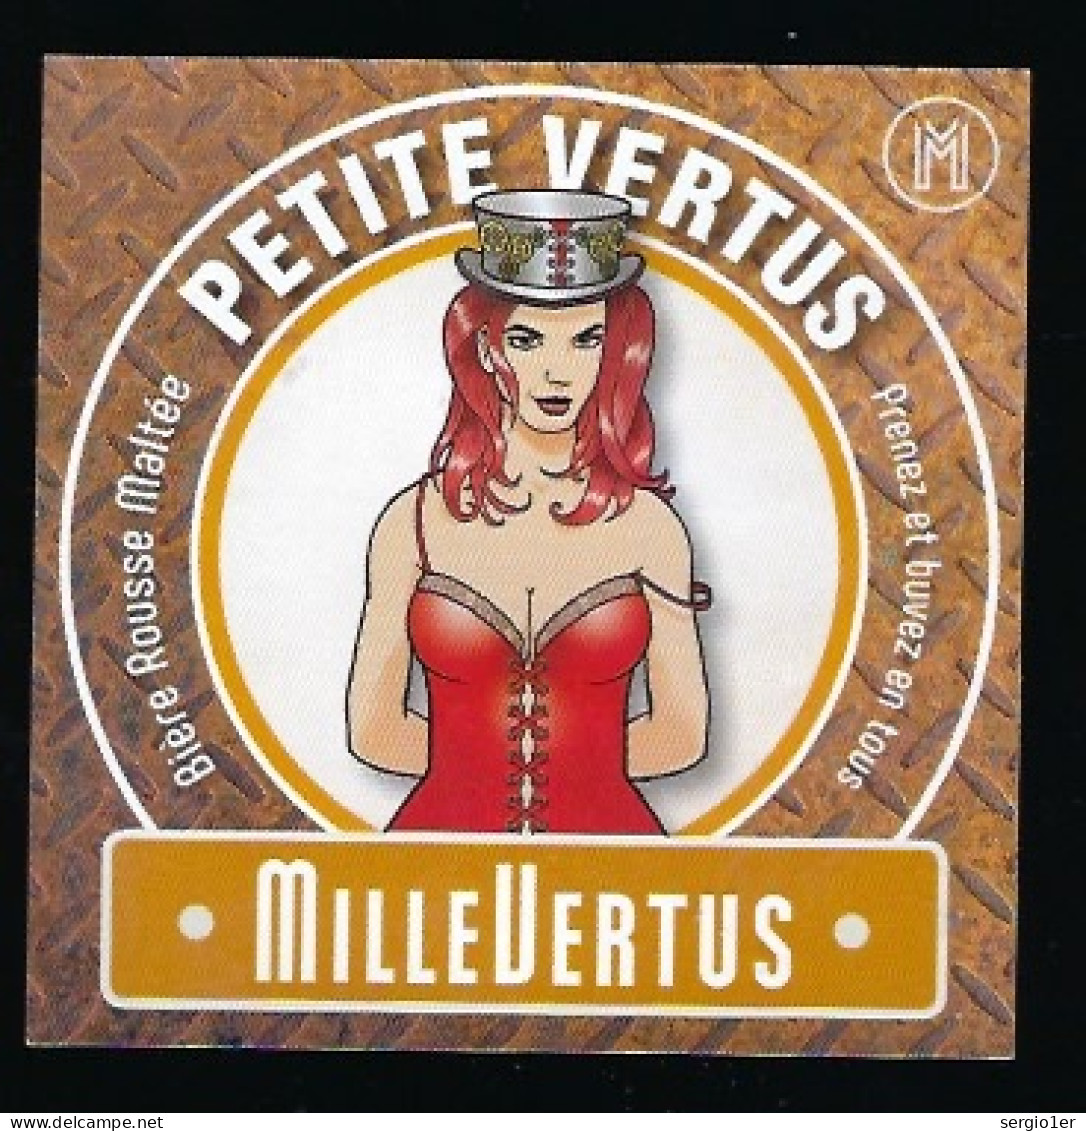 étiquette Bière Belge: Biere Rousse Maltée  Petite Vertus 4,7°% Brasserie Millevertus à Tintigny " Femme" - Bière